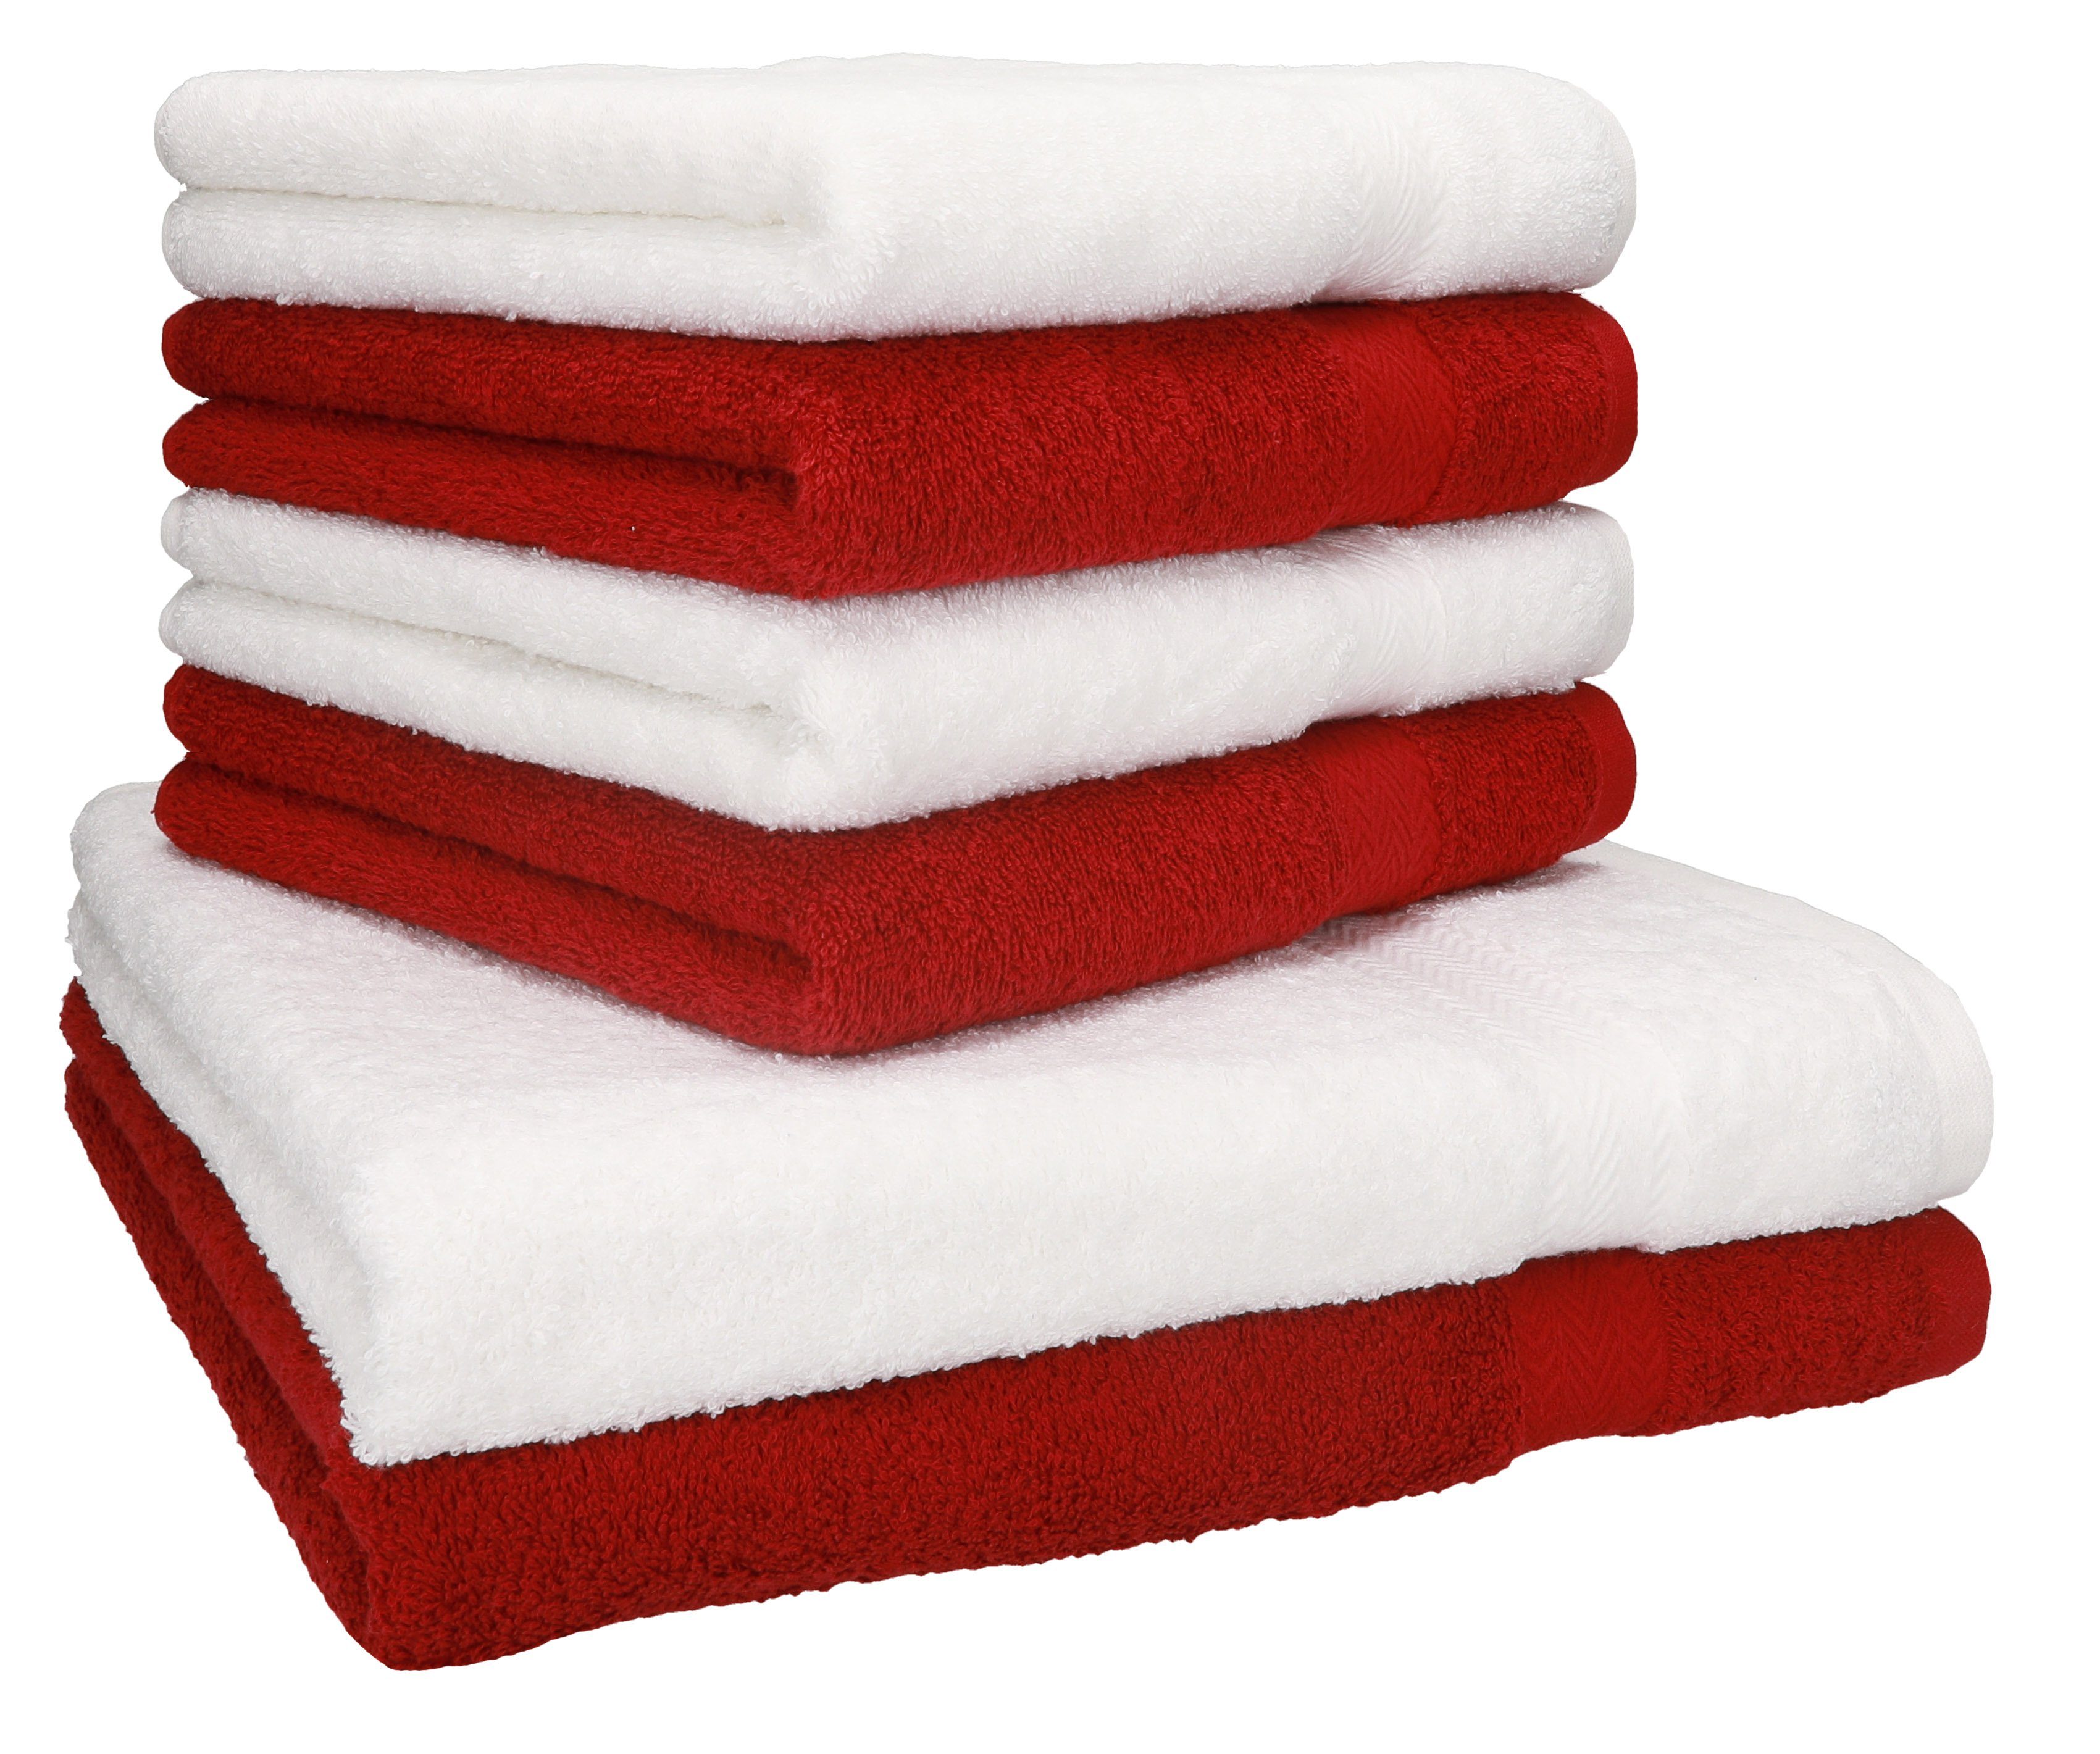 Betz Handtuch Set 6-TLG. Handtuch-Set Premium 100% Baumwolle 2 Duschtücher 4 Handtücher Farbe dunkelrot und weiß, 100% Baumwolle